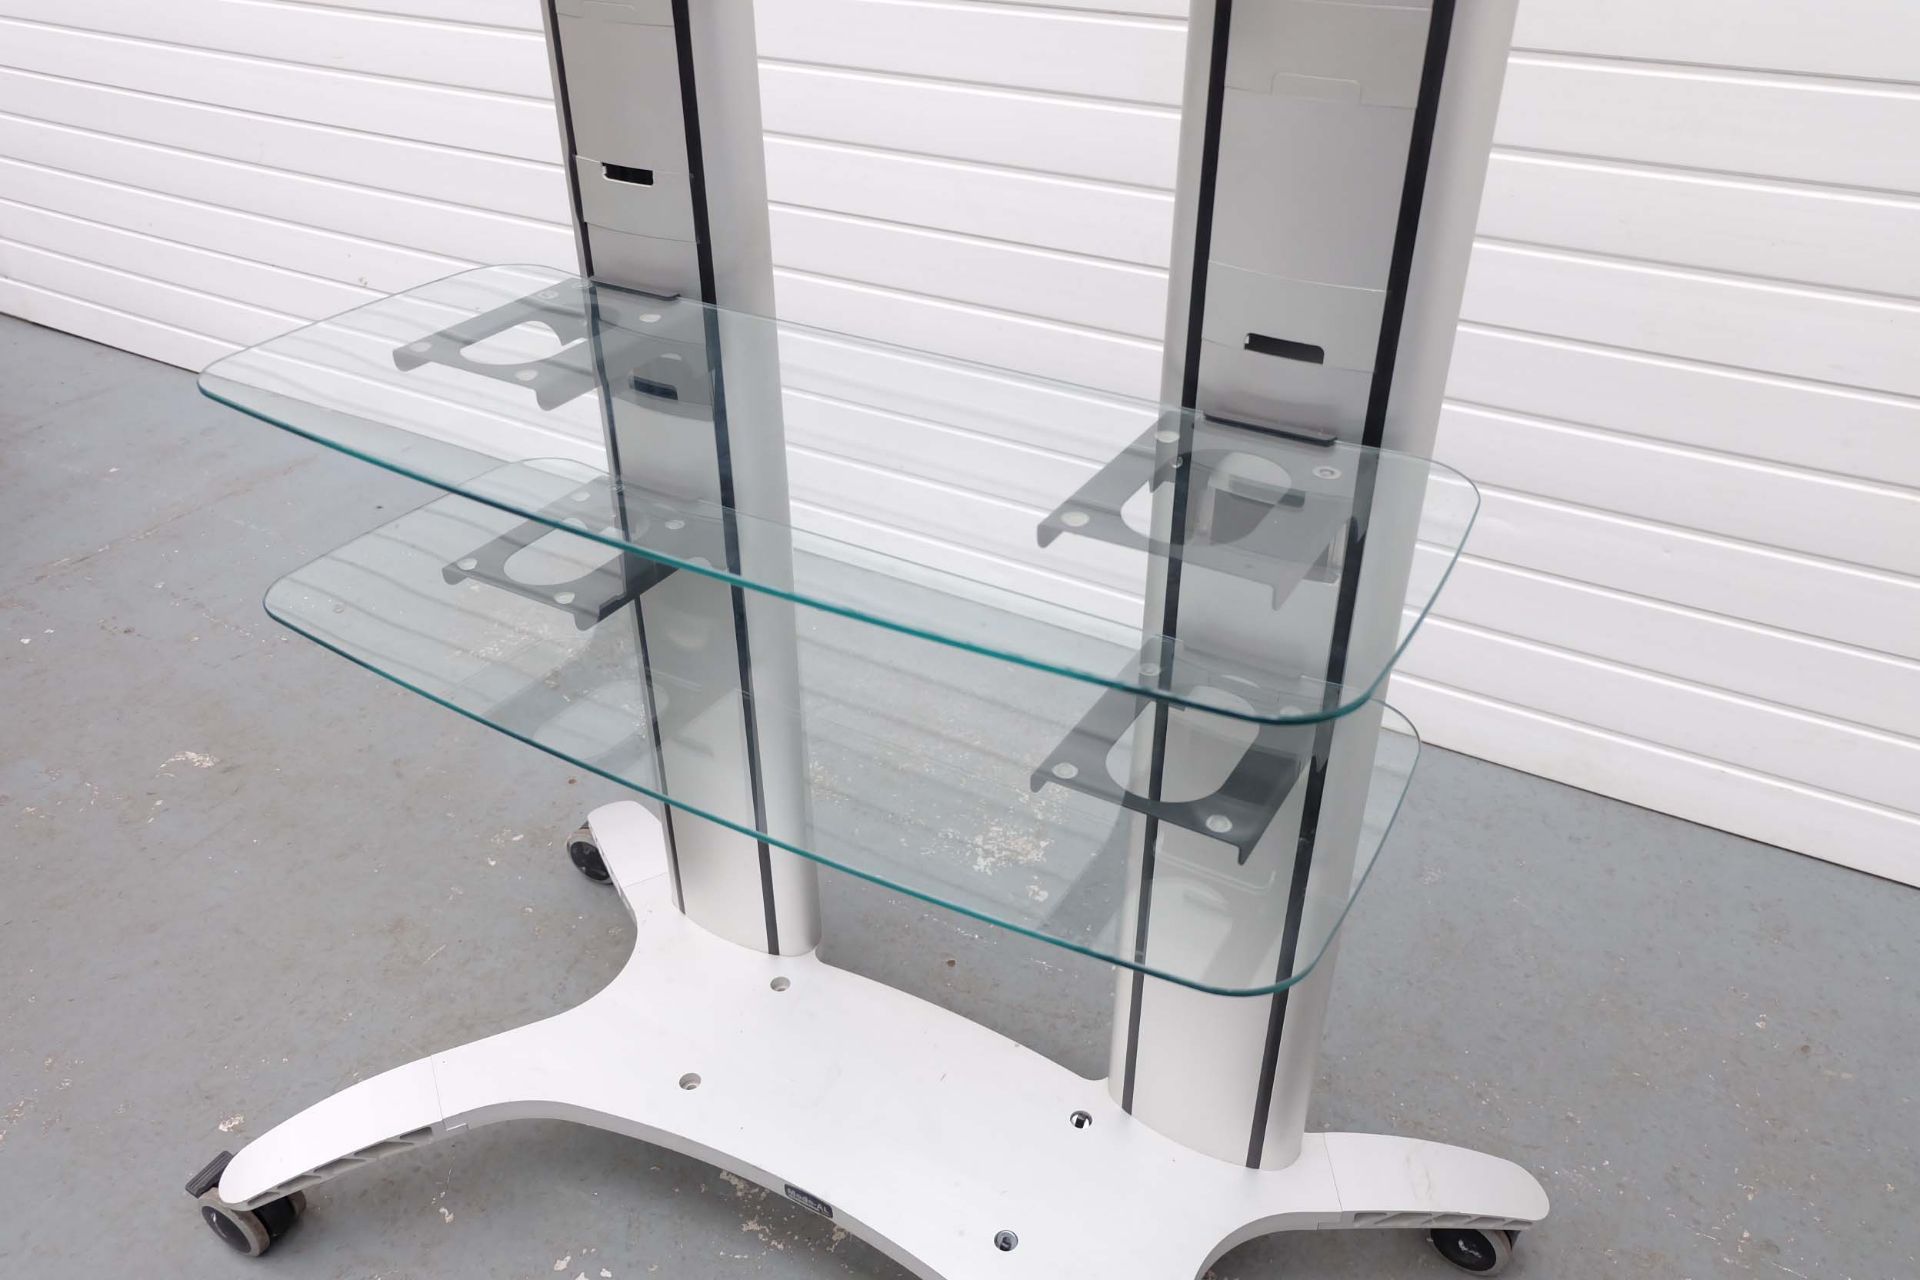 MODE-AL Exhibition T.V Media Stand on Wheels. 2 Glass Shelves. Adjustable T.V Bracket. Size 1100mm x - Bild 5 aus 6